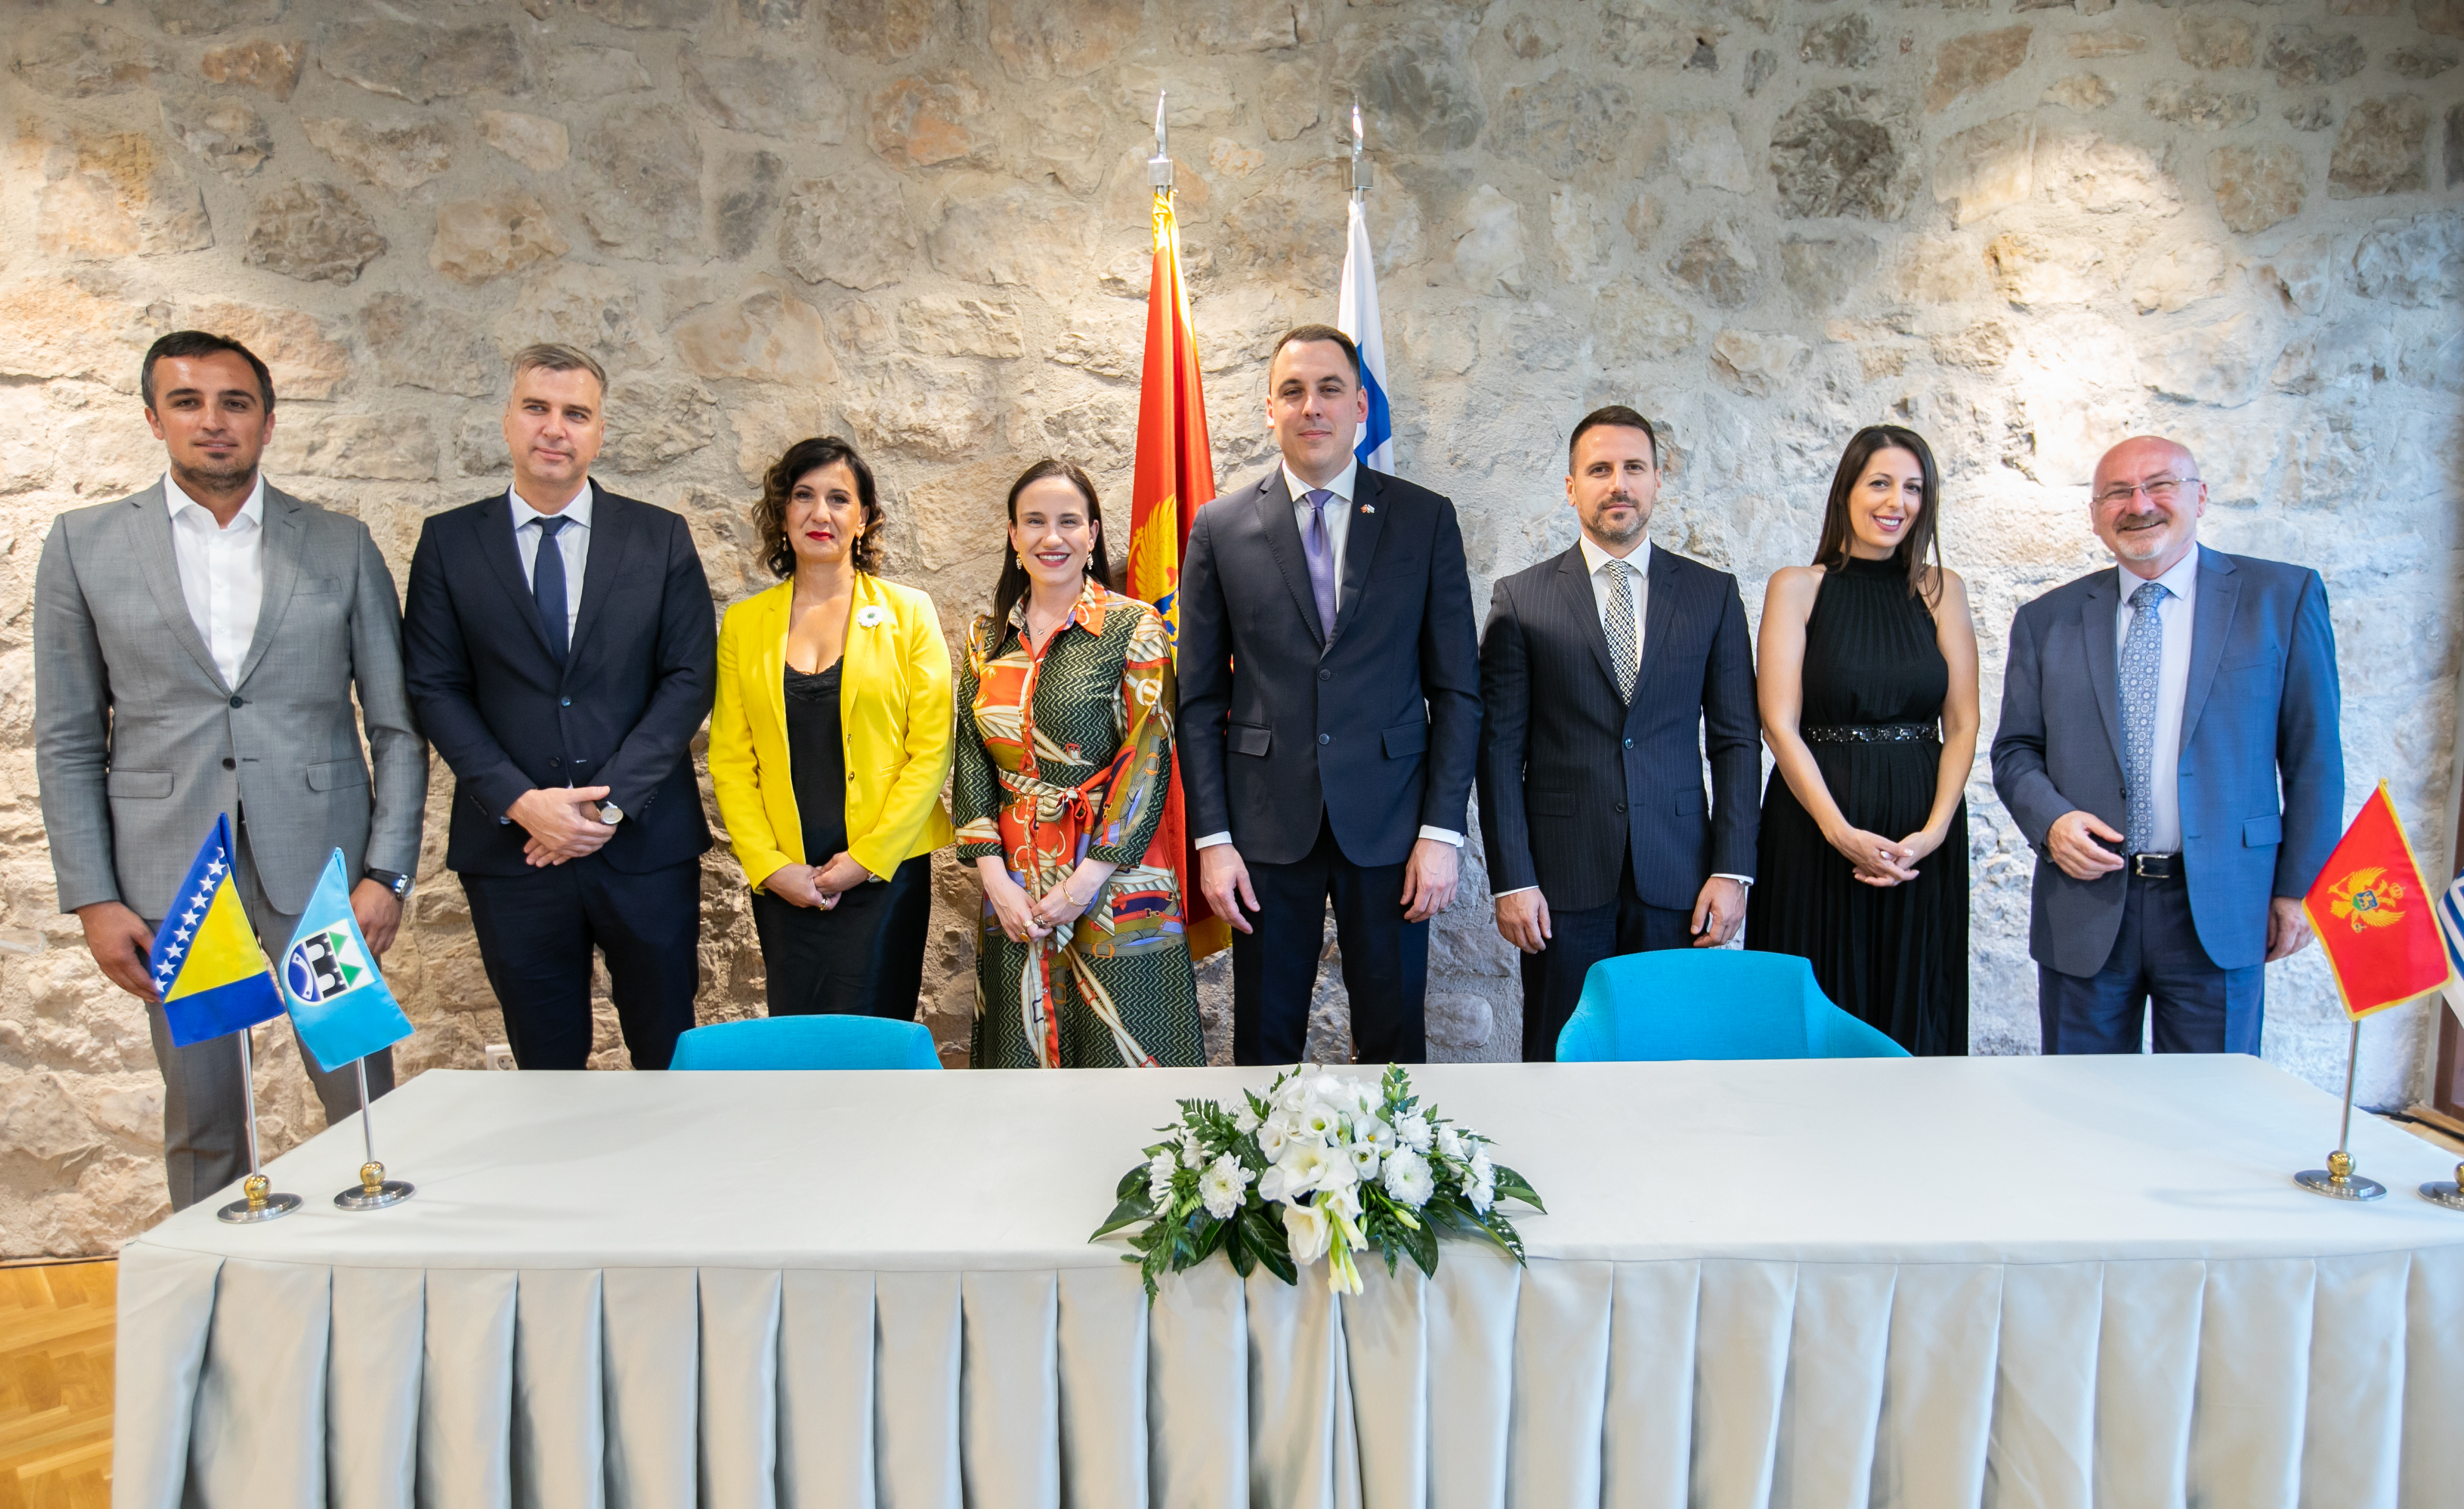 Potpisan sporazum o bratimljenju; Još jedna potvrda dobrih odnosa i iskrenog prijateljstva Podgorice i Sarajeva